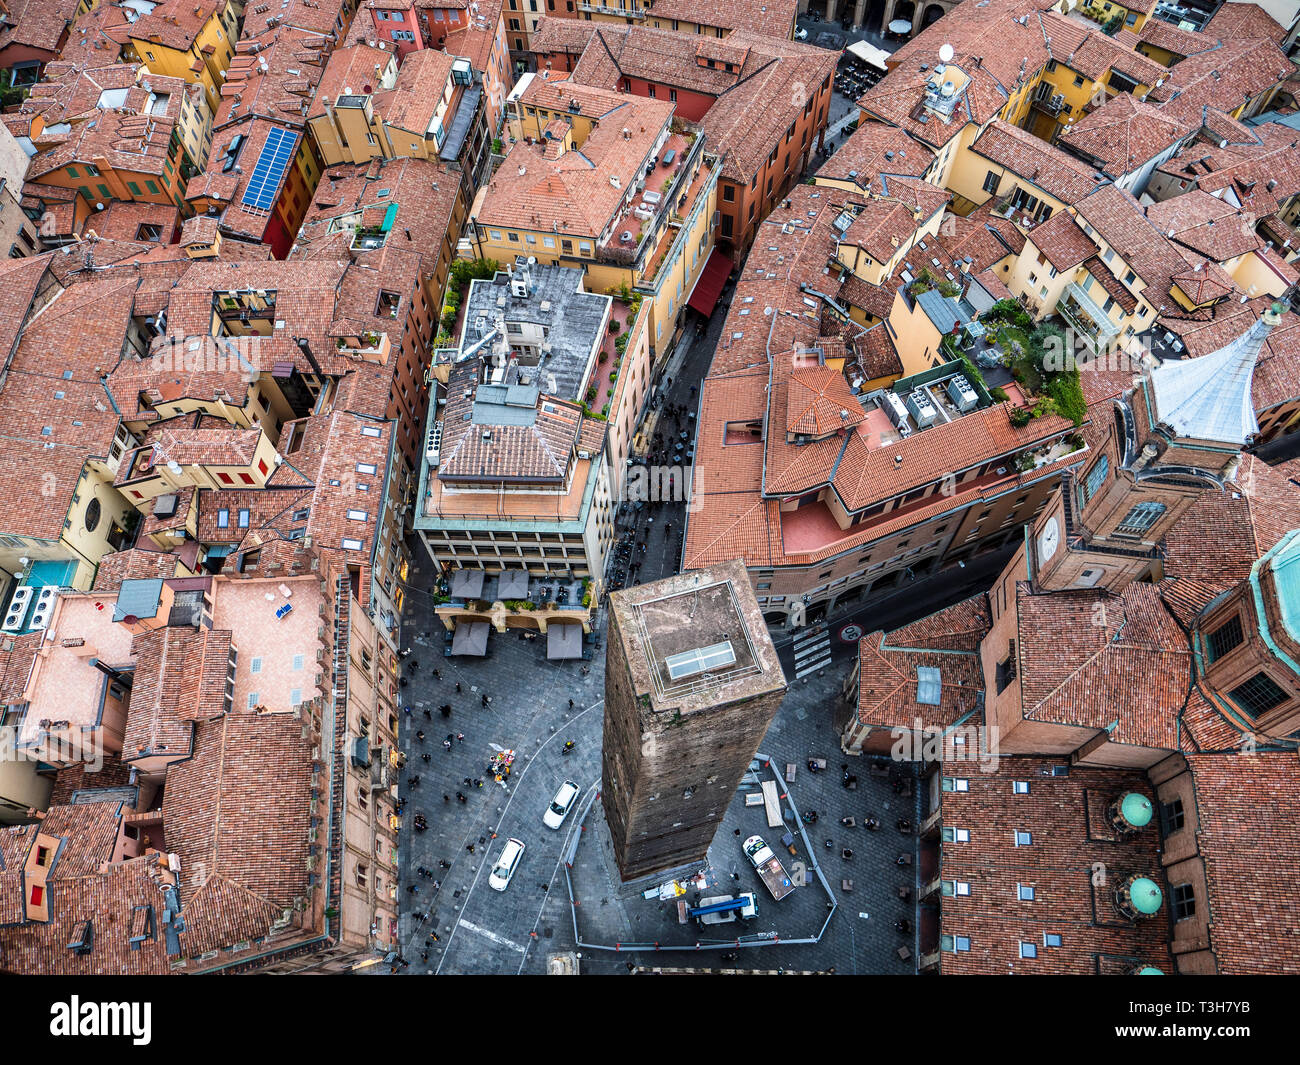 La ville de Bologne - les toits rouges de la ville médiévale de Bologne en Italie. Banque D'Images